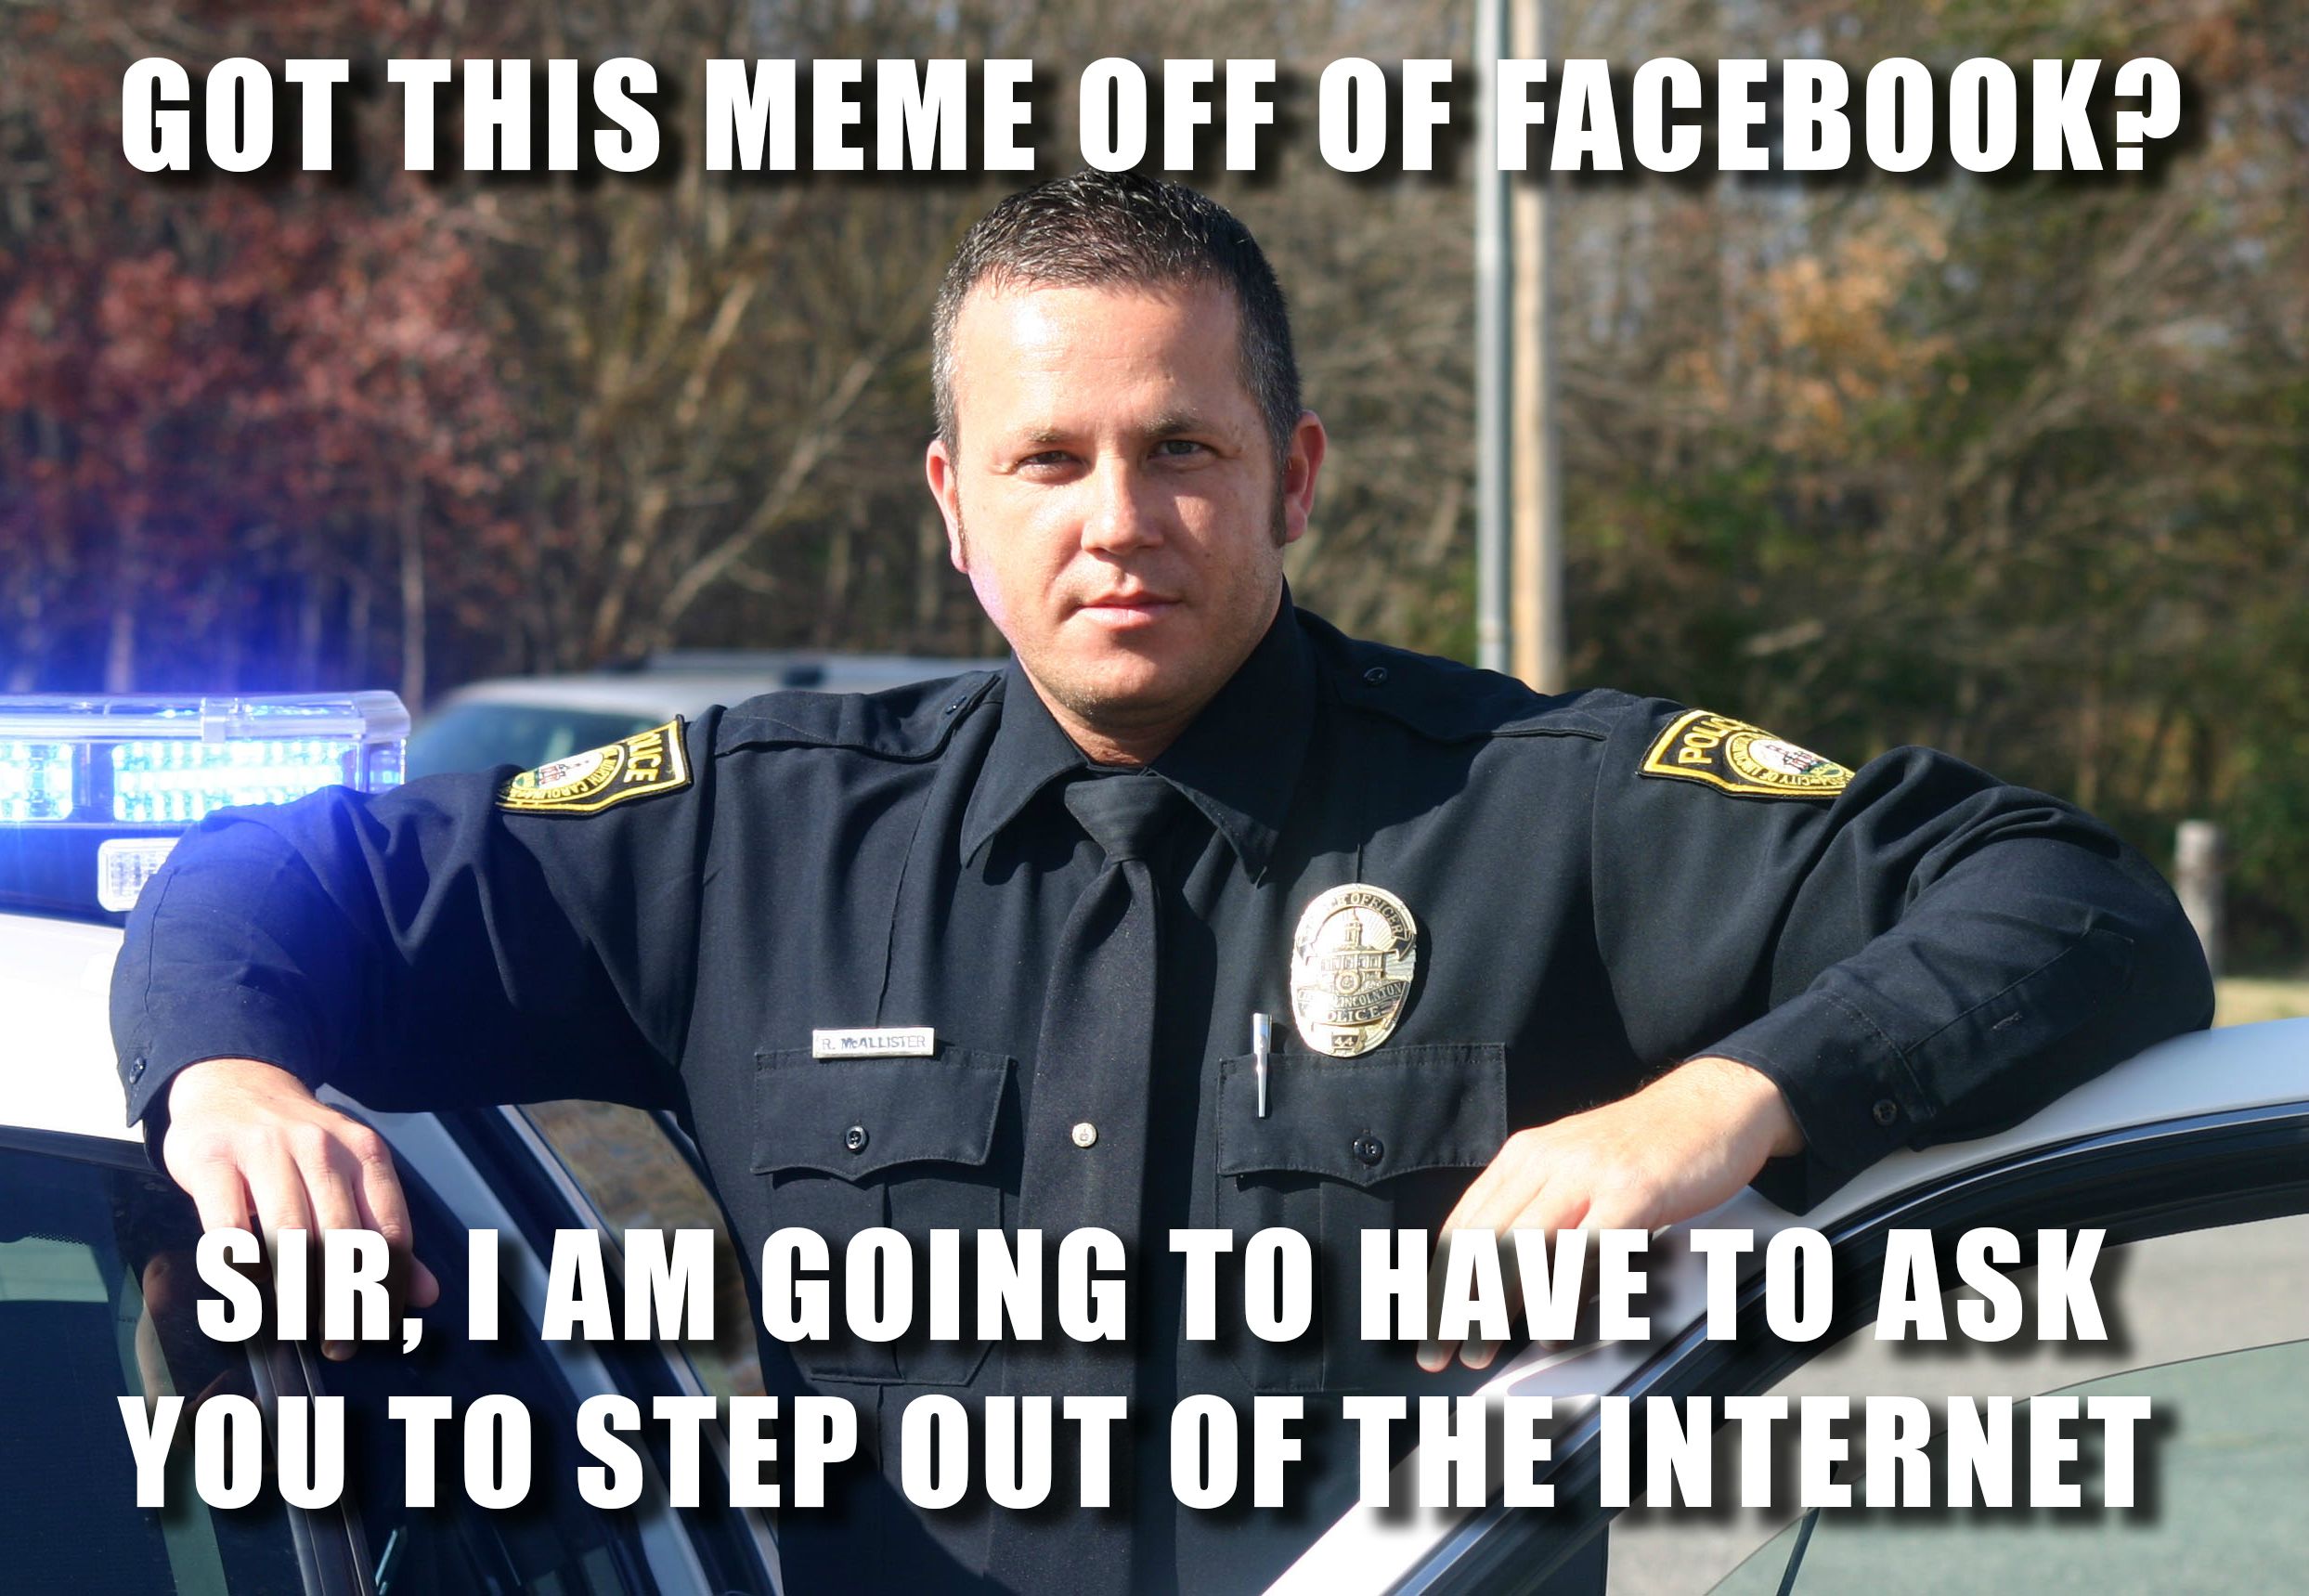 Officer dank meme arrest for takign a meme off facebook